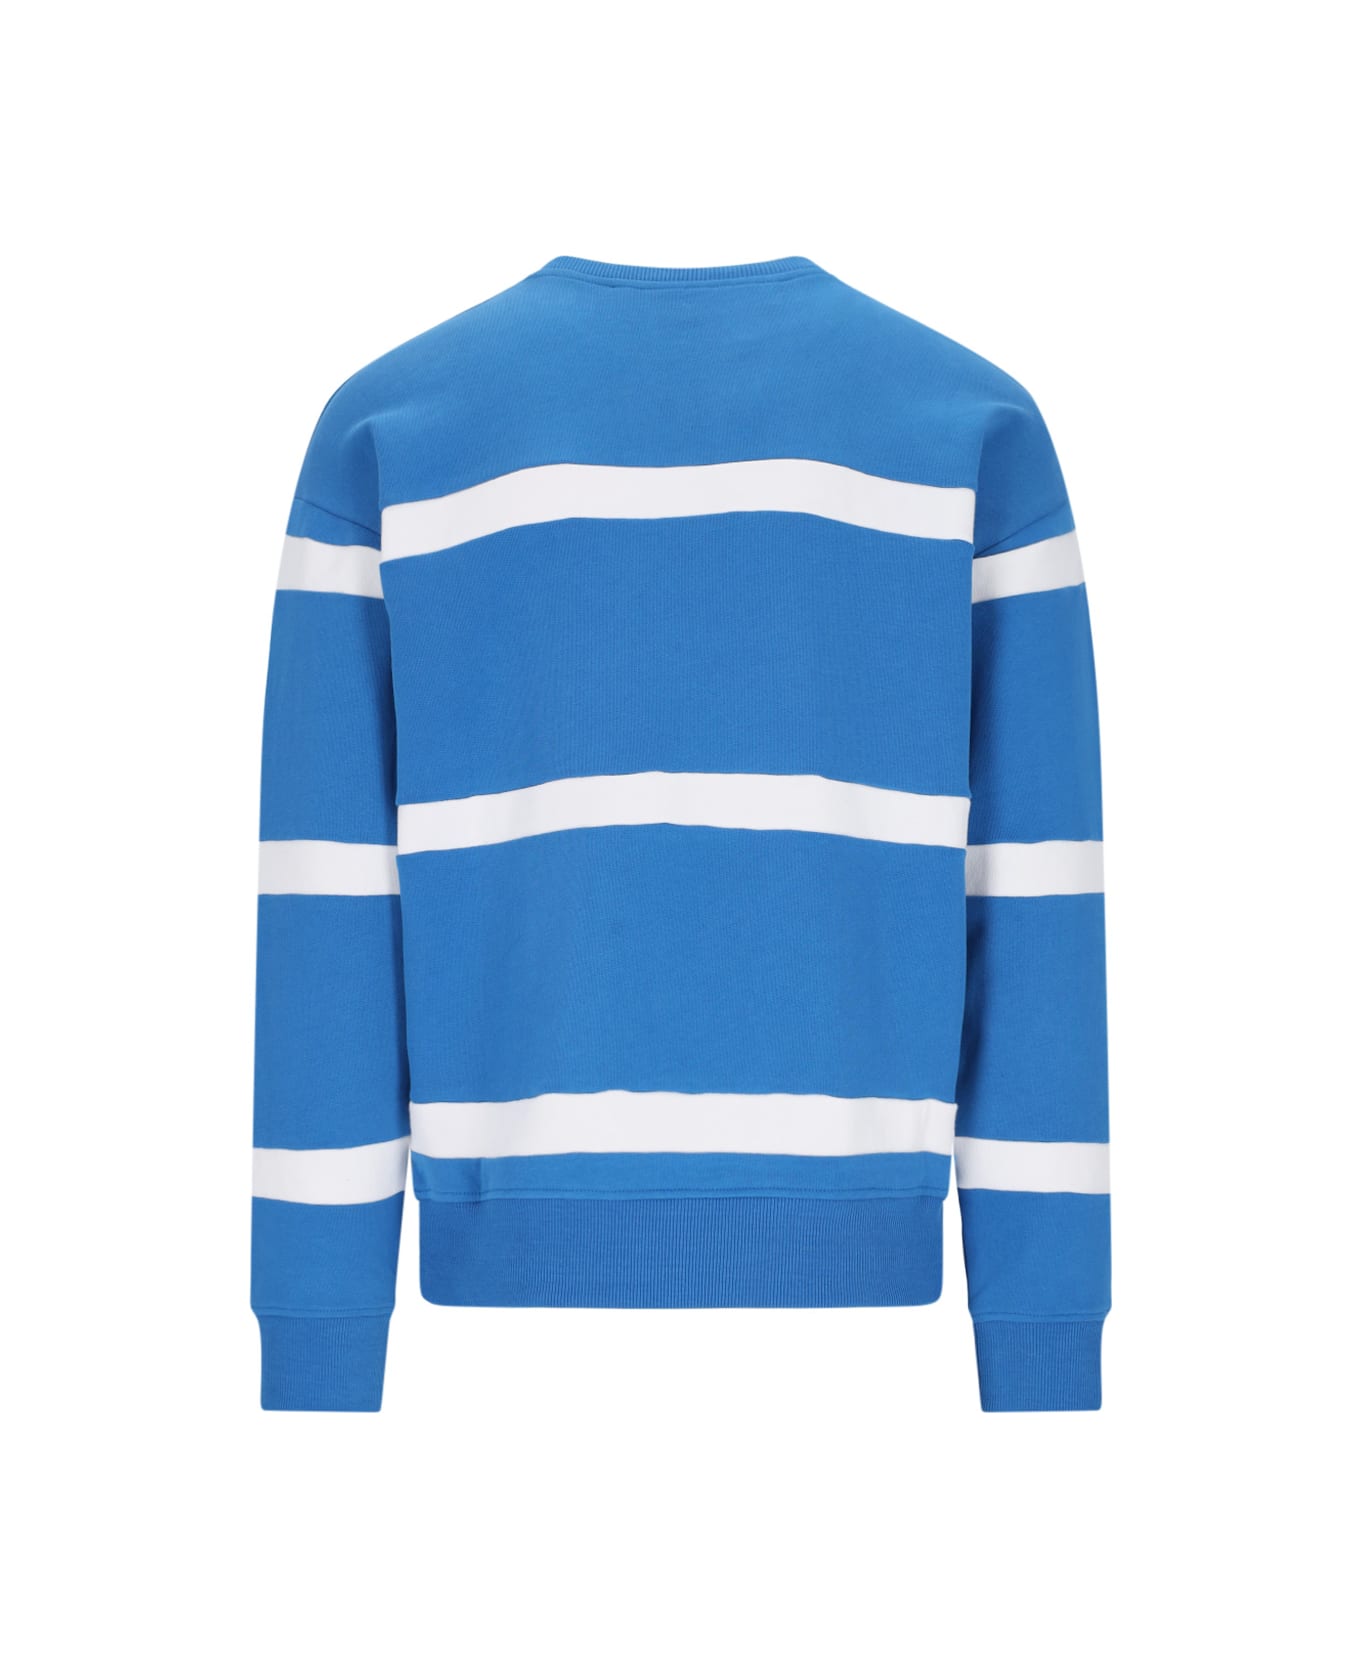 J.W. Anderson Striped Sweatshirt - Blue